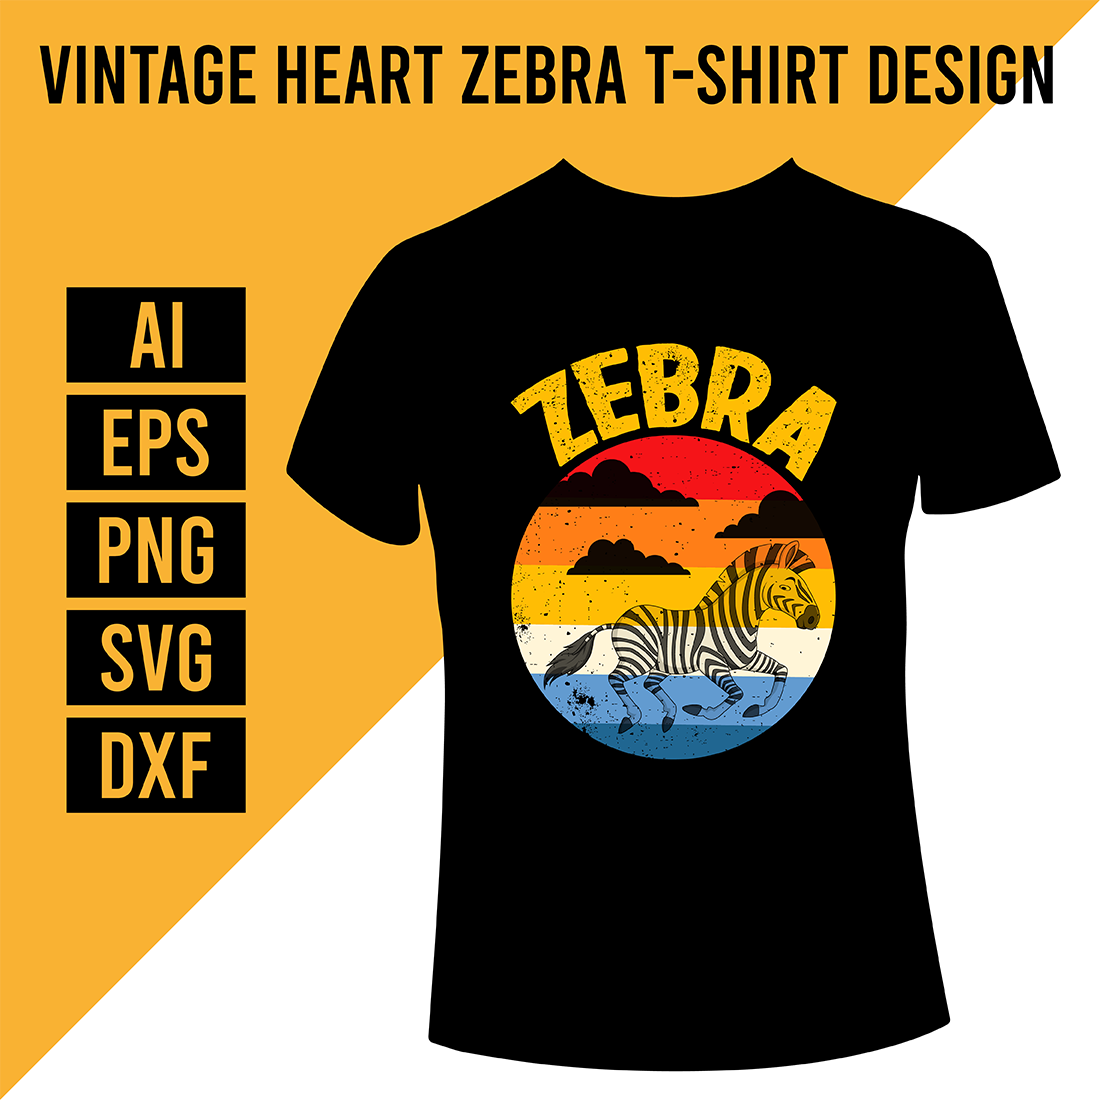 Vintage Heart Zebra T-Shirt Design cover image.